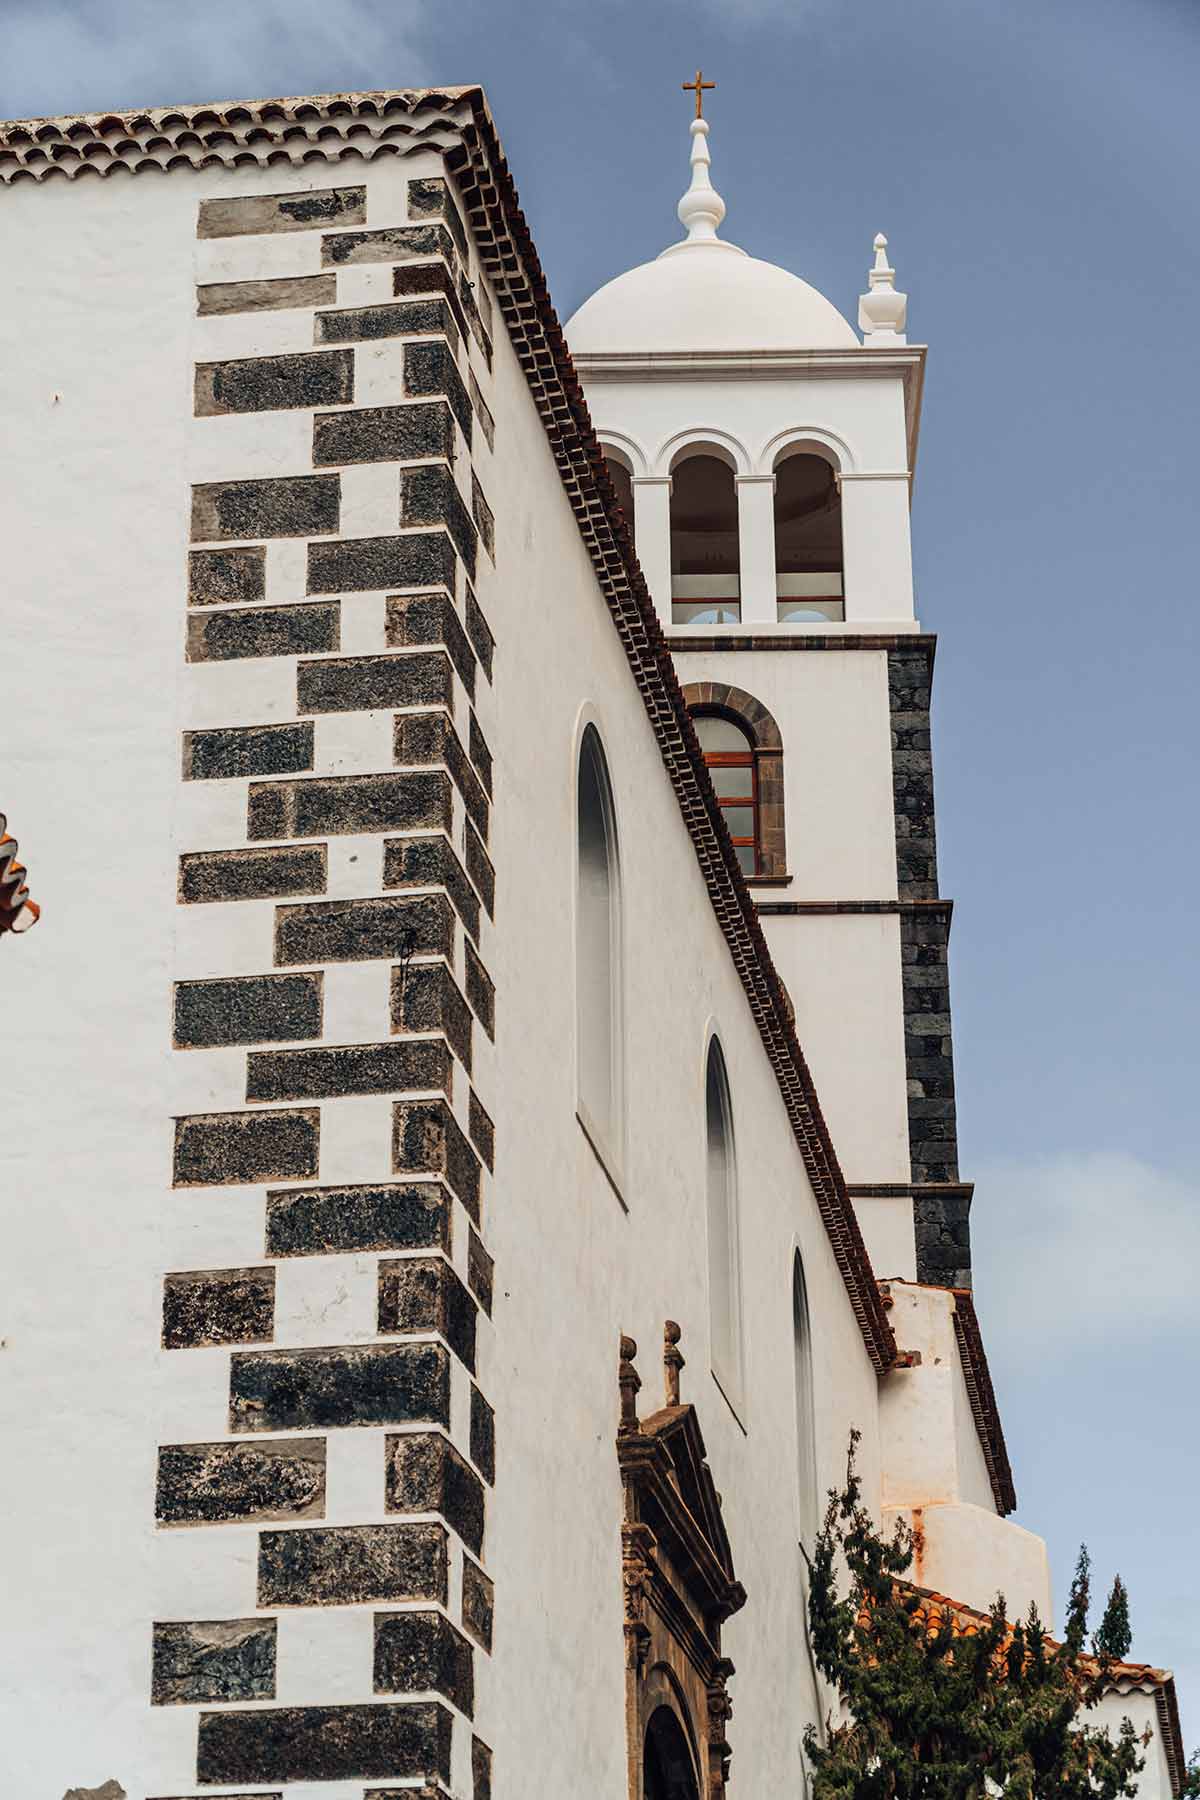 The Church of Santa Ana, Garachico